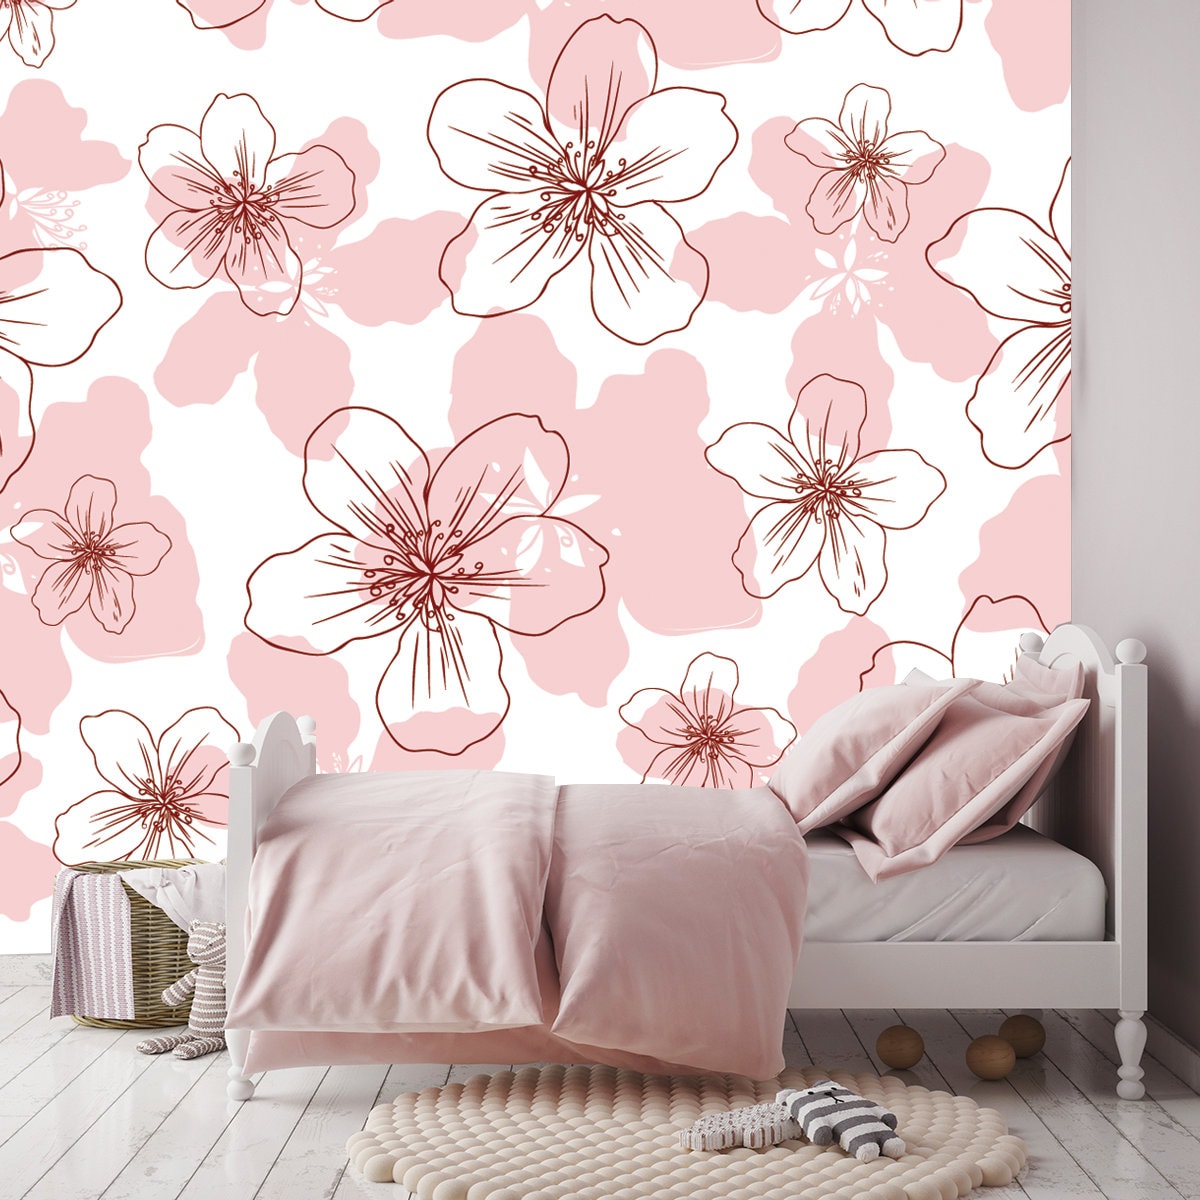 Apple Flower Blossom Hand Drawn Isolated on White Background Wallpaper Girls Bedroom Mural